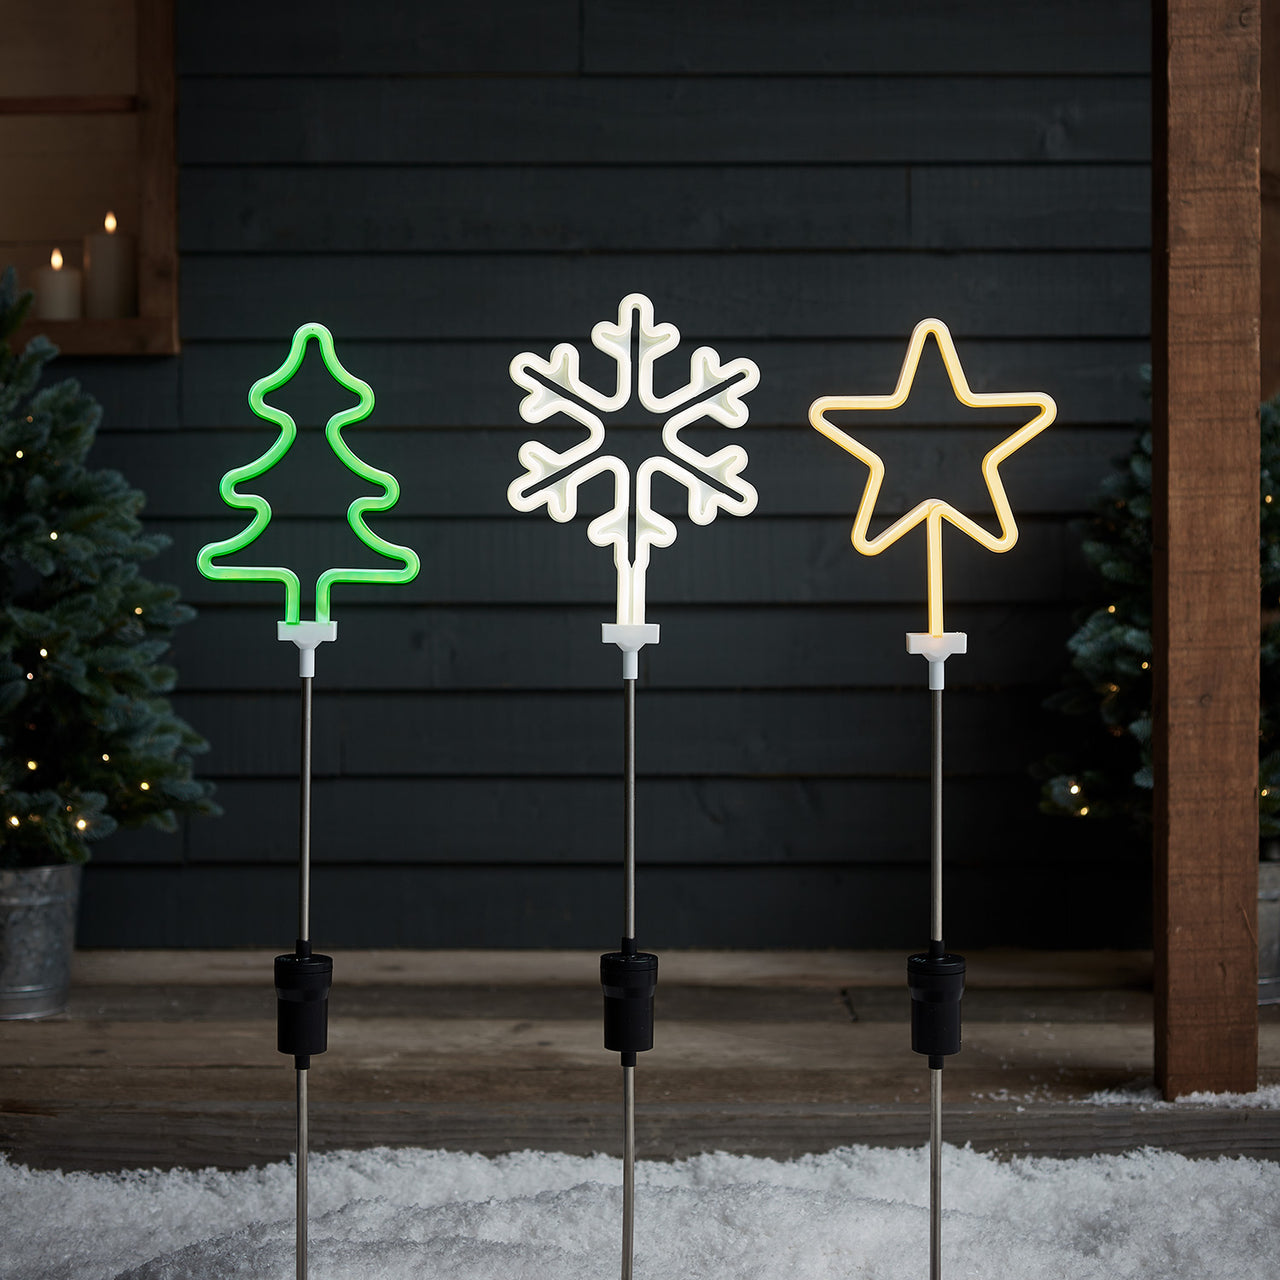 3 Neon Christmas Stake Lights